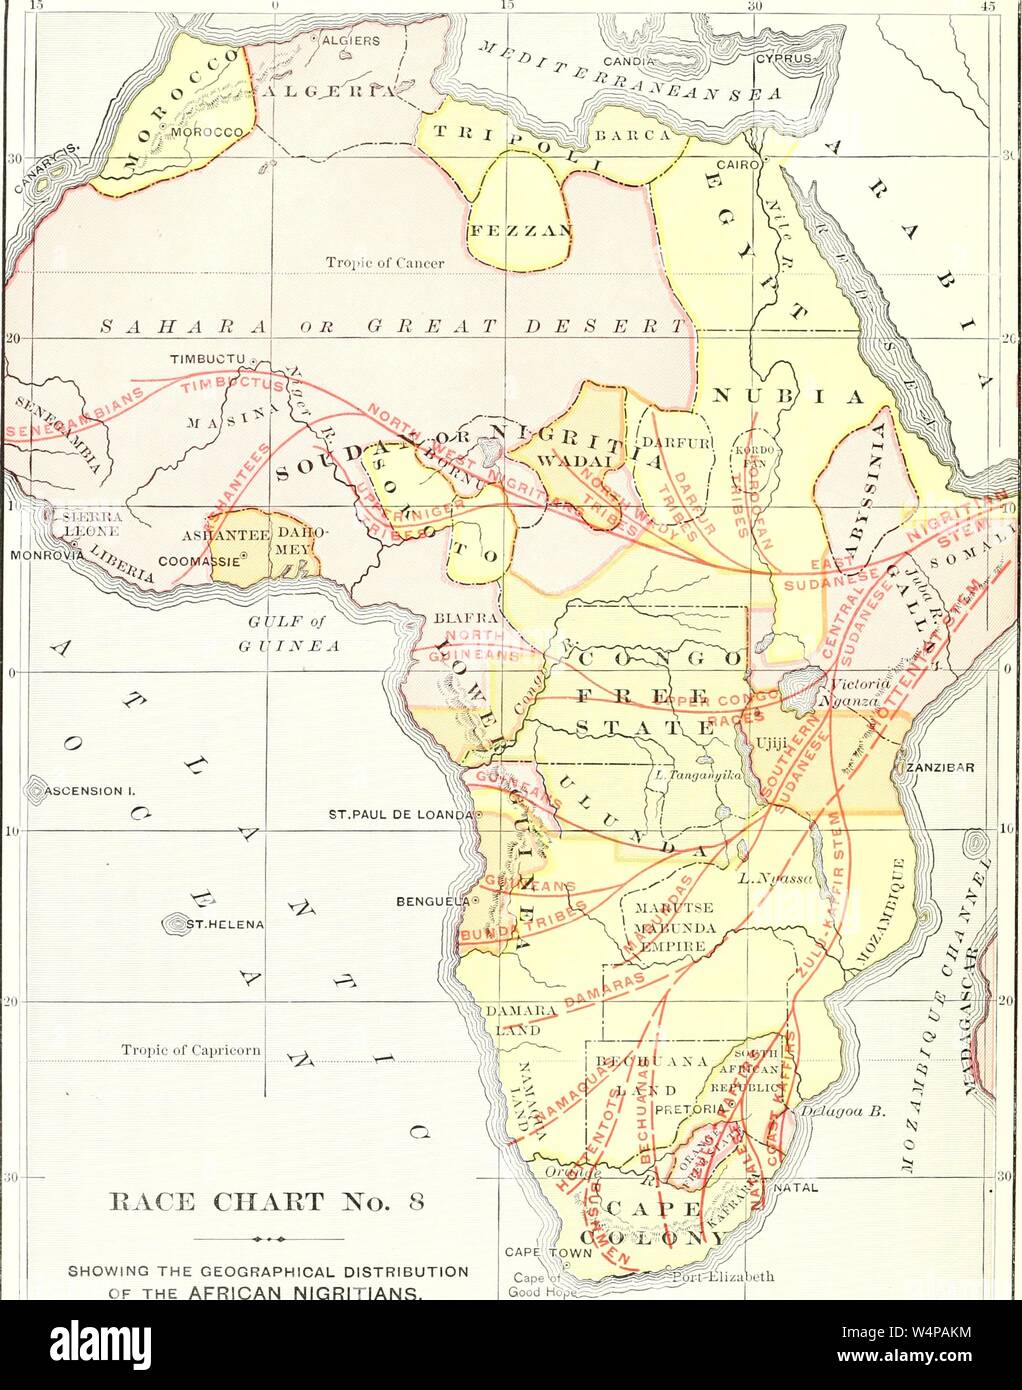 Graviert Karte der geographischen Verteilung der Afrikanischen Nigritians, aus dem Buch "ridpath Universal's Geschichte" von John Clark Ridpath, 1897. Mit freundlicher Genehmigung Internet Archive. () Stockfoto